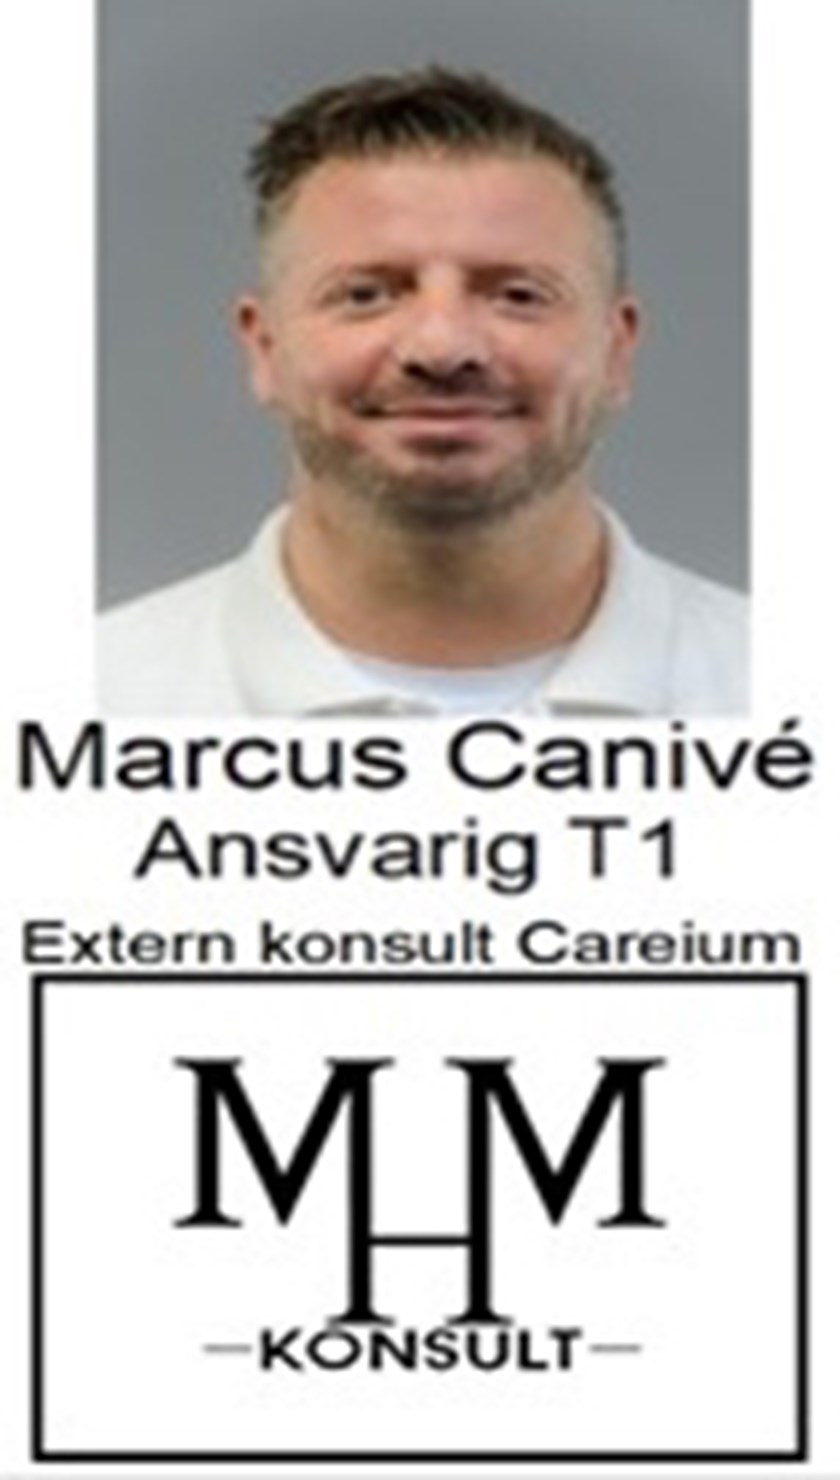 Marcus Canivé, Ansvarig T1.